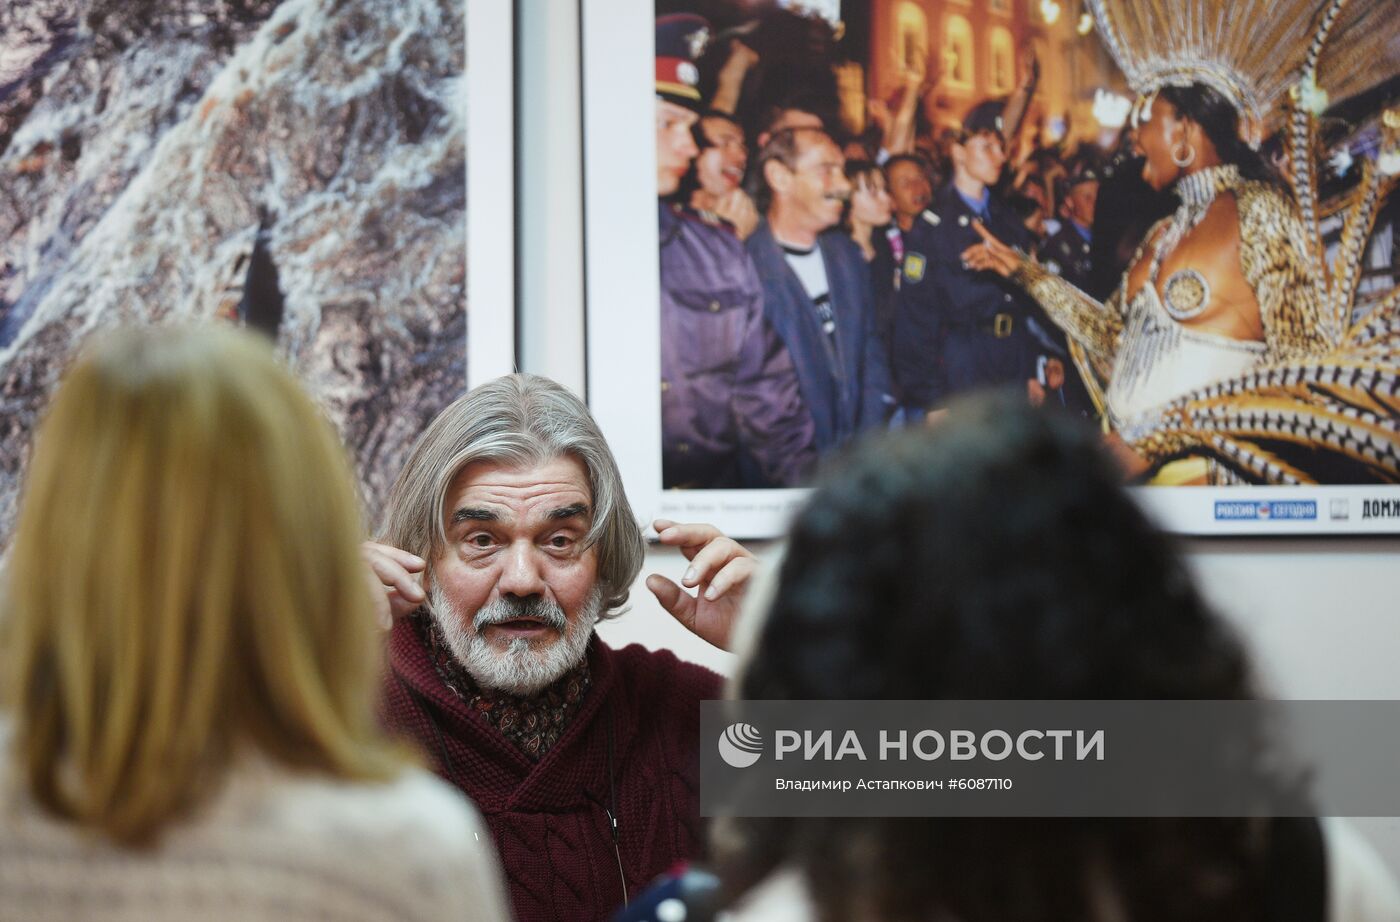 Открытие выставки фотокорреспондента МИА "Россия сегодня" В. Вяткина